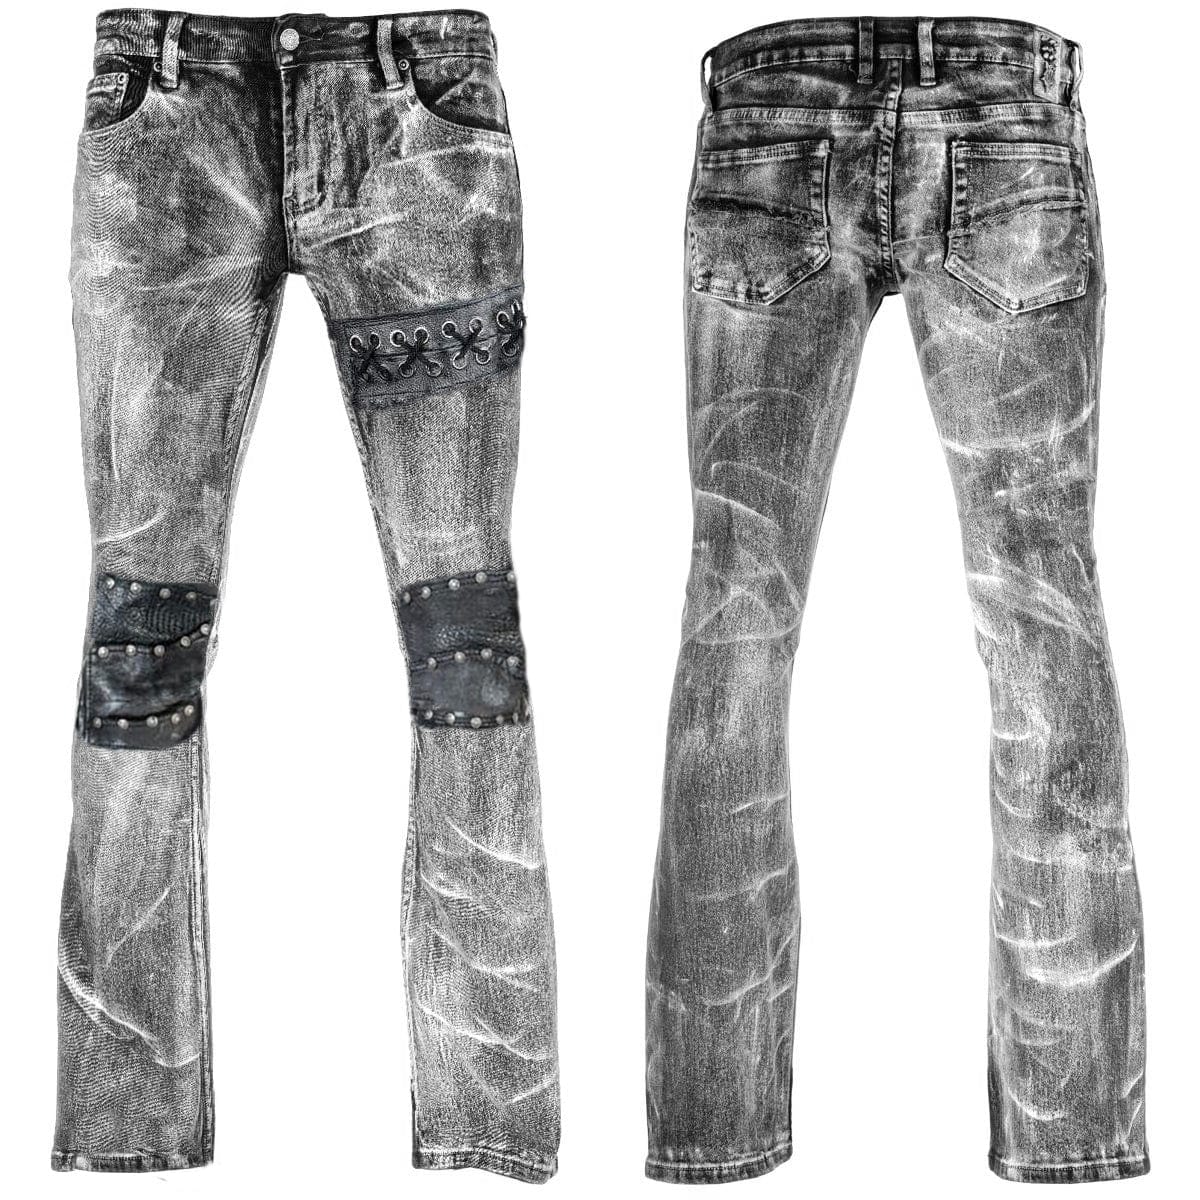 Custom Chop Shop Pants Wornstar Custom Jeans - Phantom